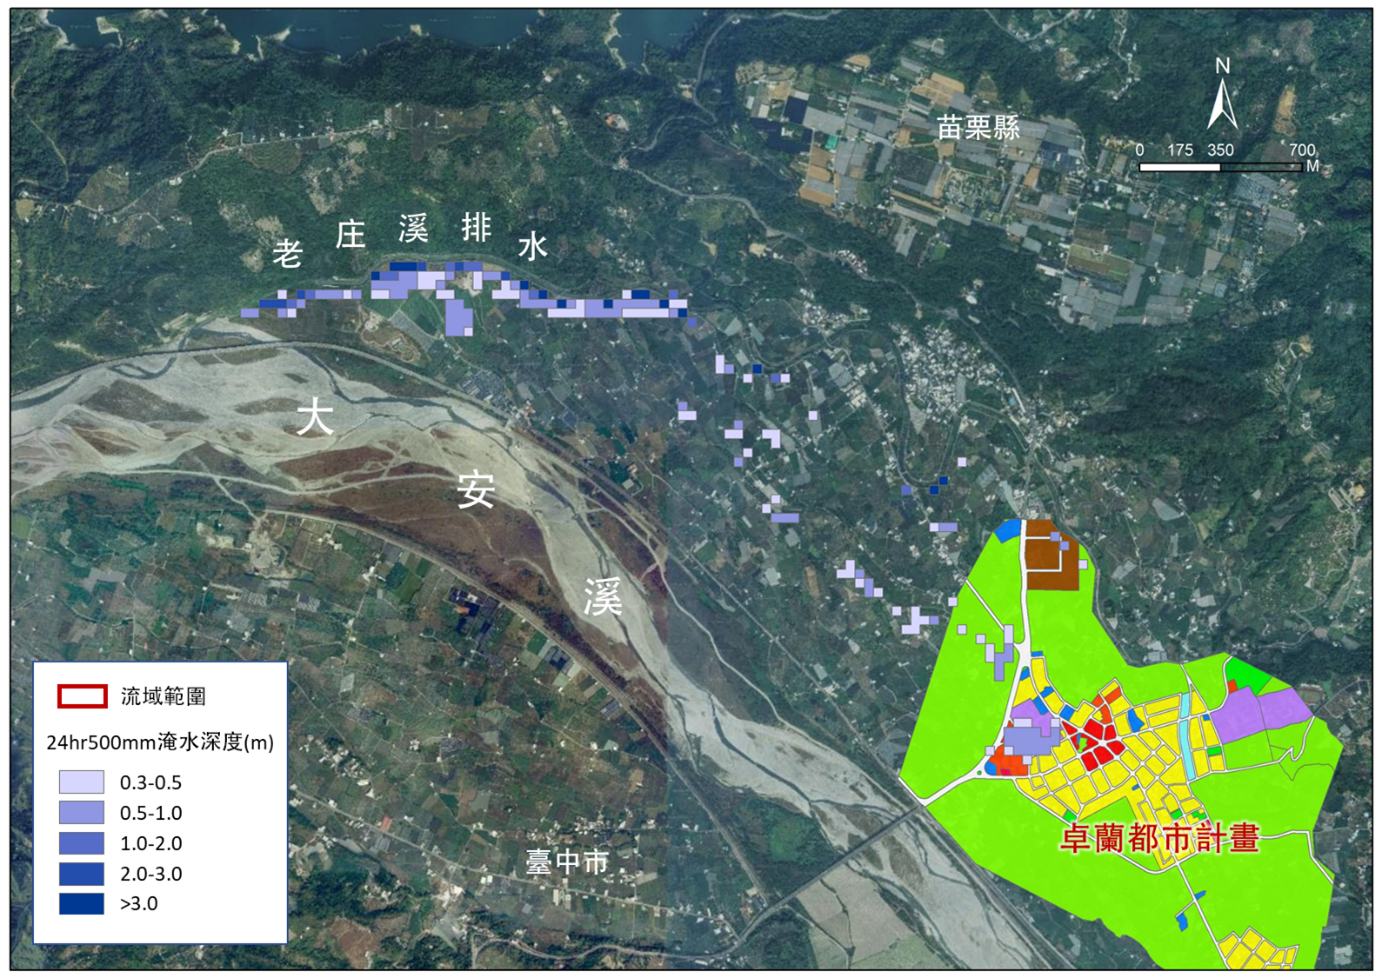 圖2 淹水潛勢區位與卓蘭都市計畫土地使用分區套繪圖